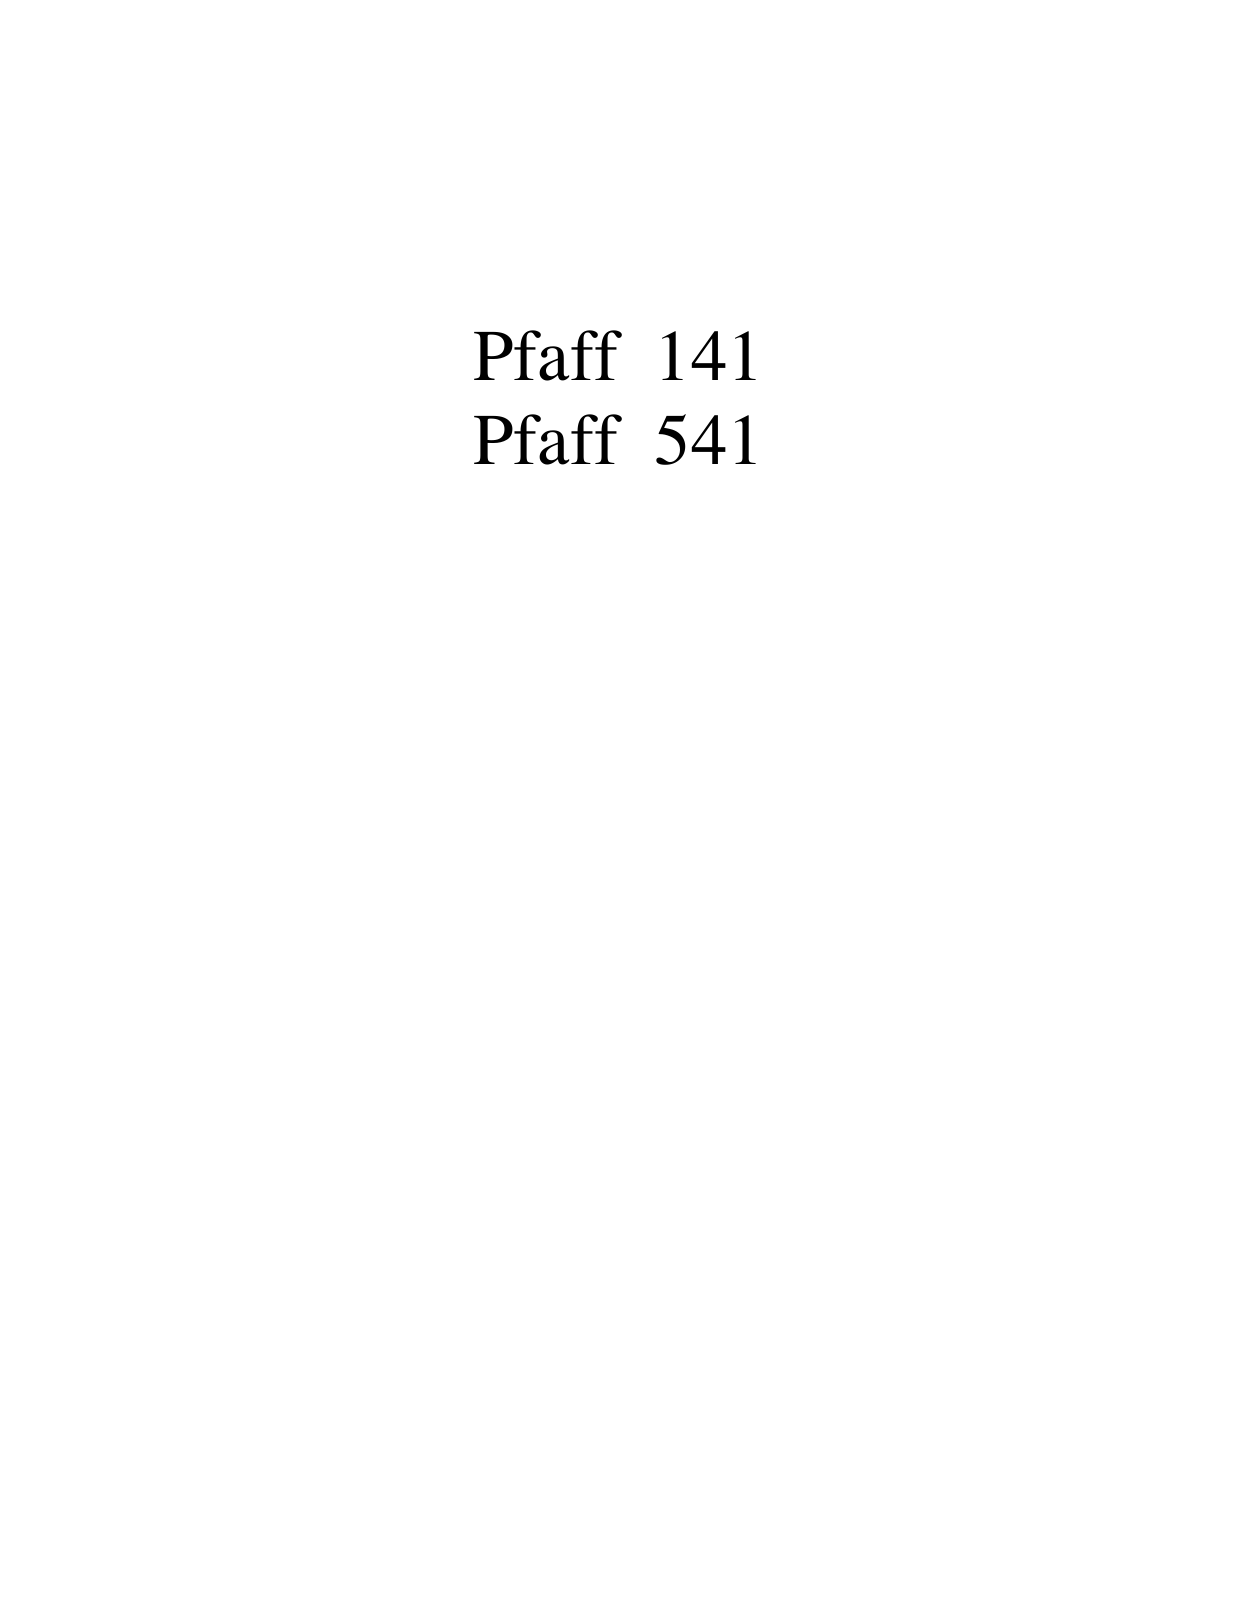 PFAFF 141, 541 Parts List